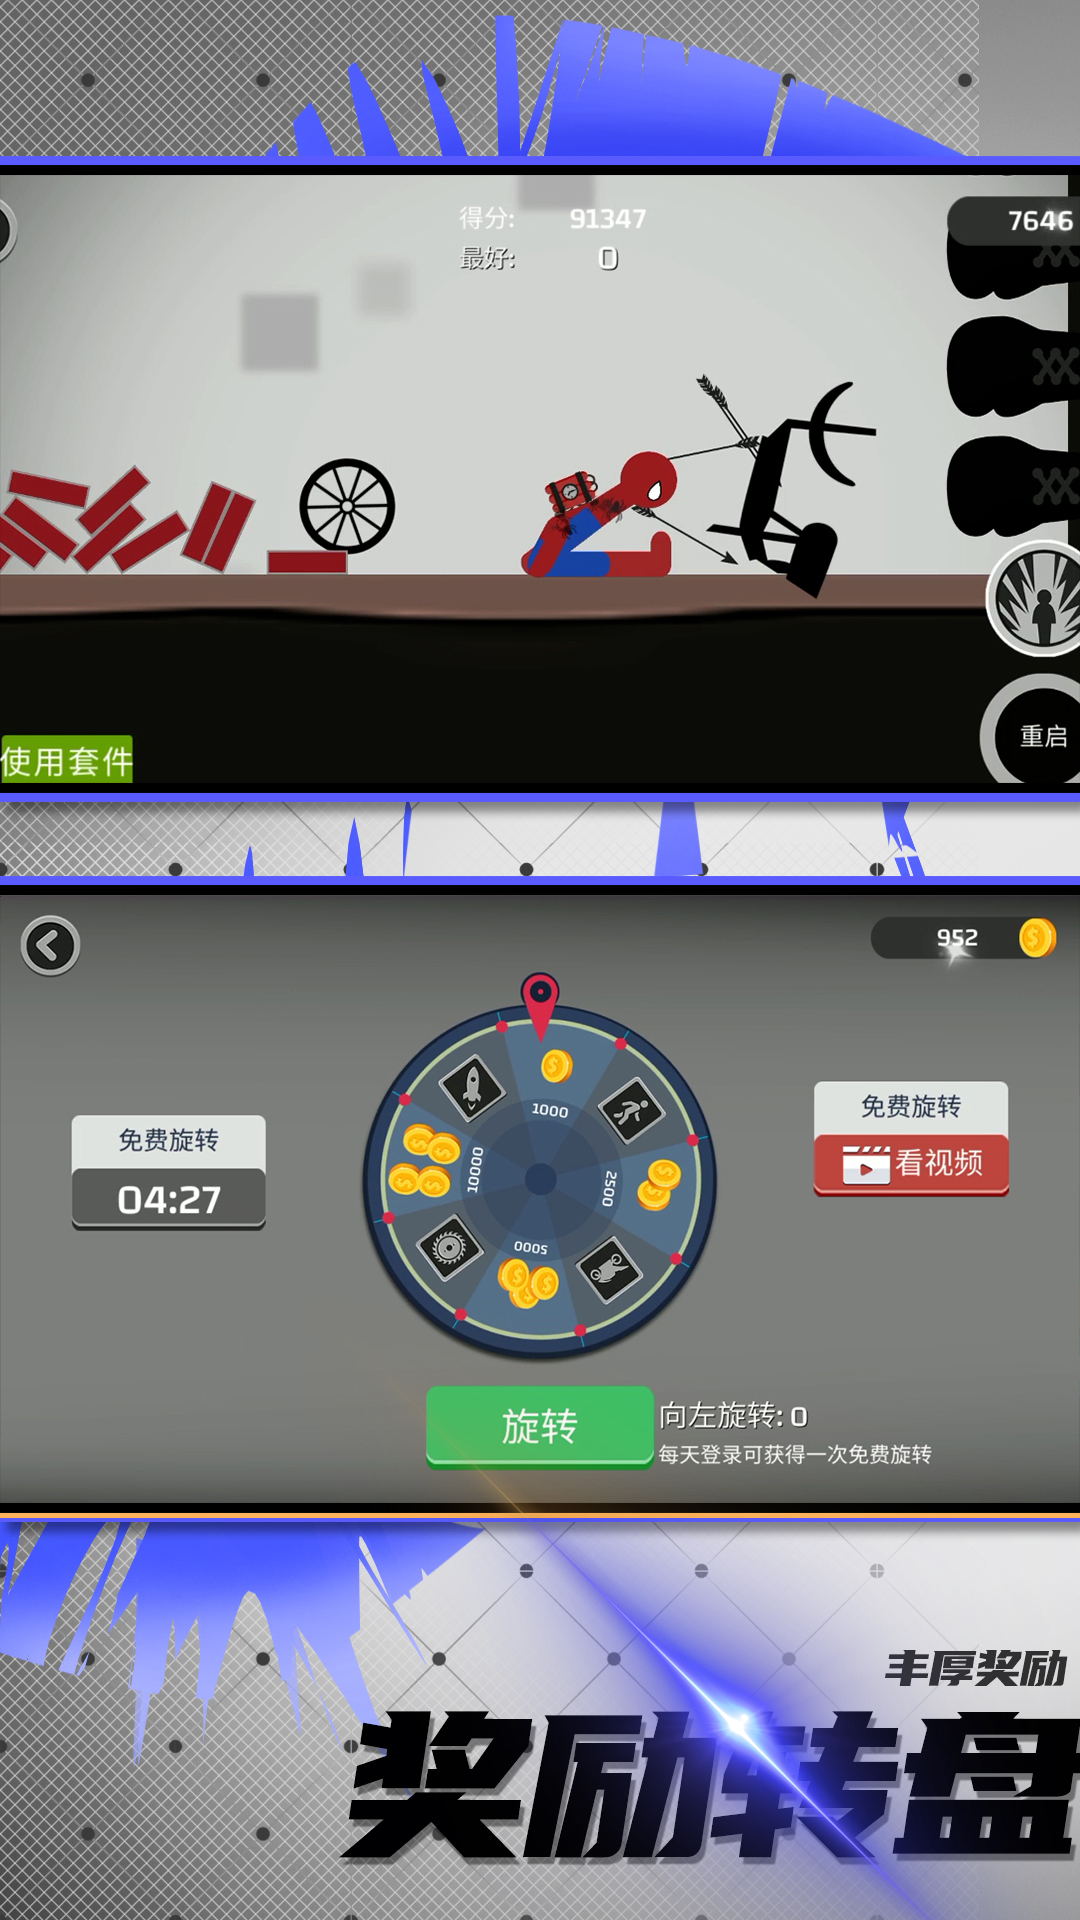 火柴人竞技模拟游戏手机版下载安装图片1